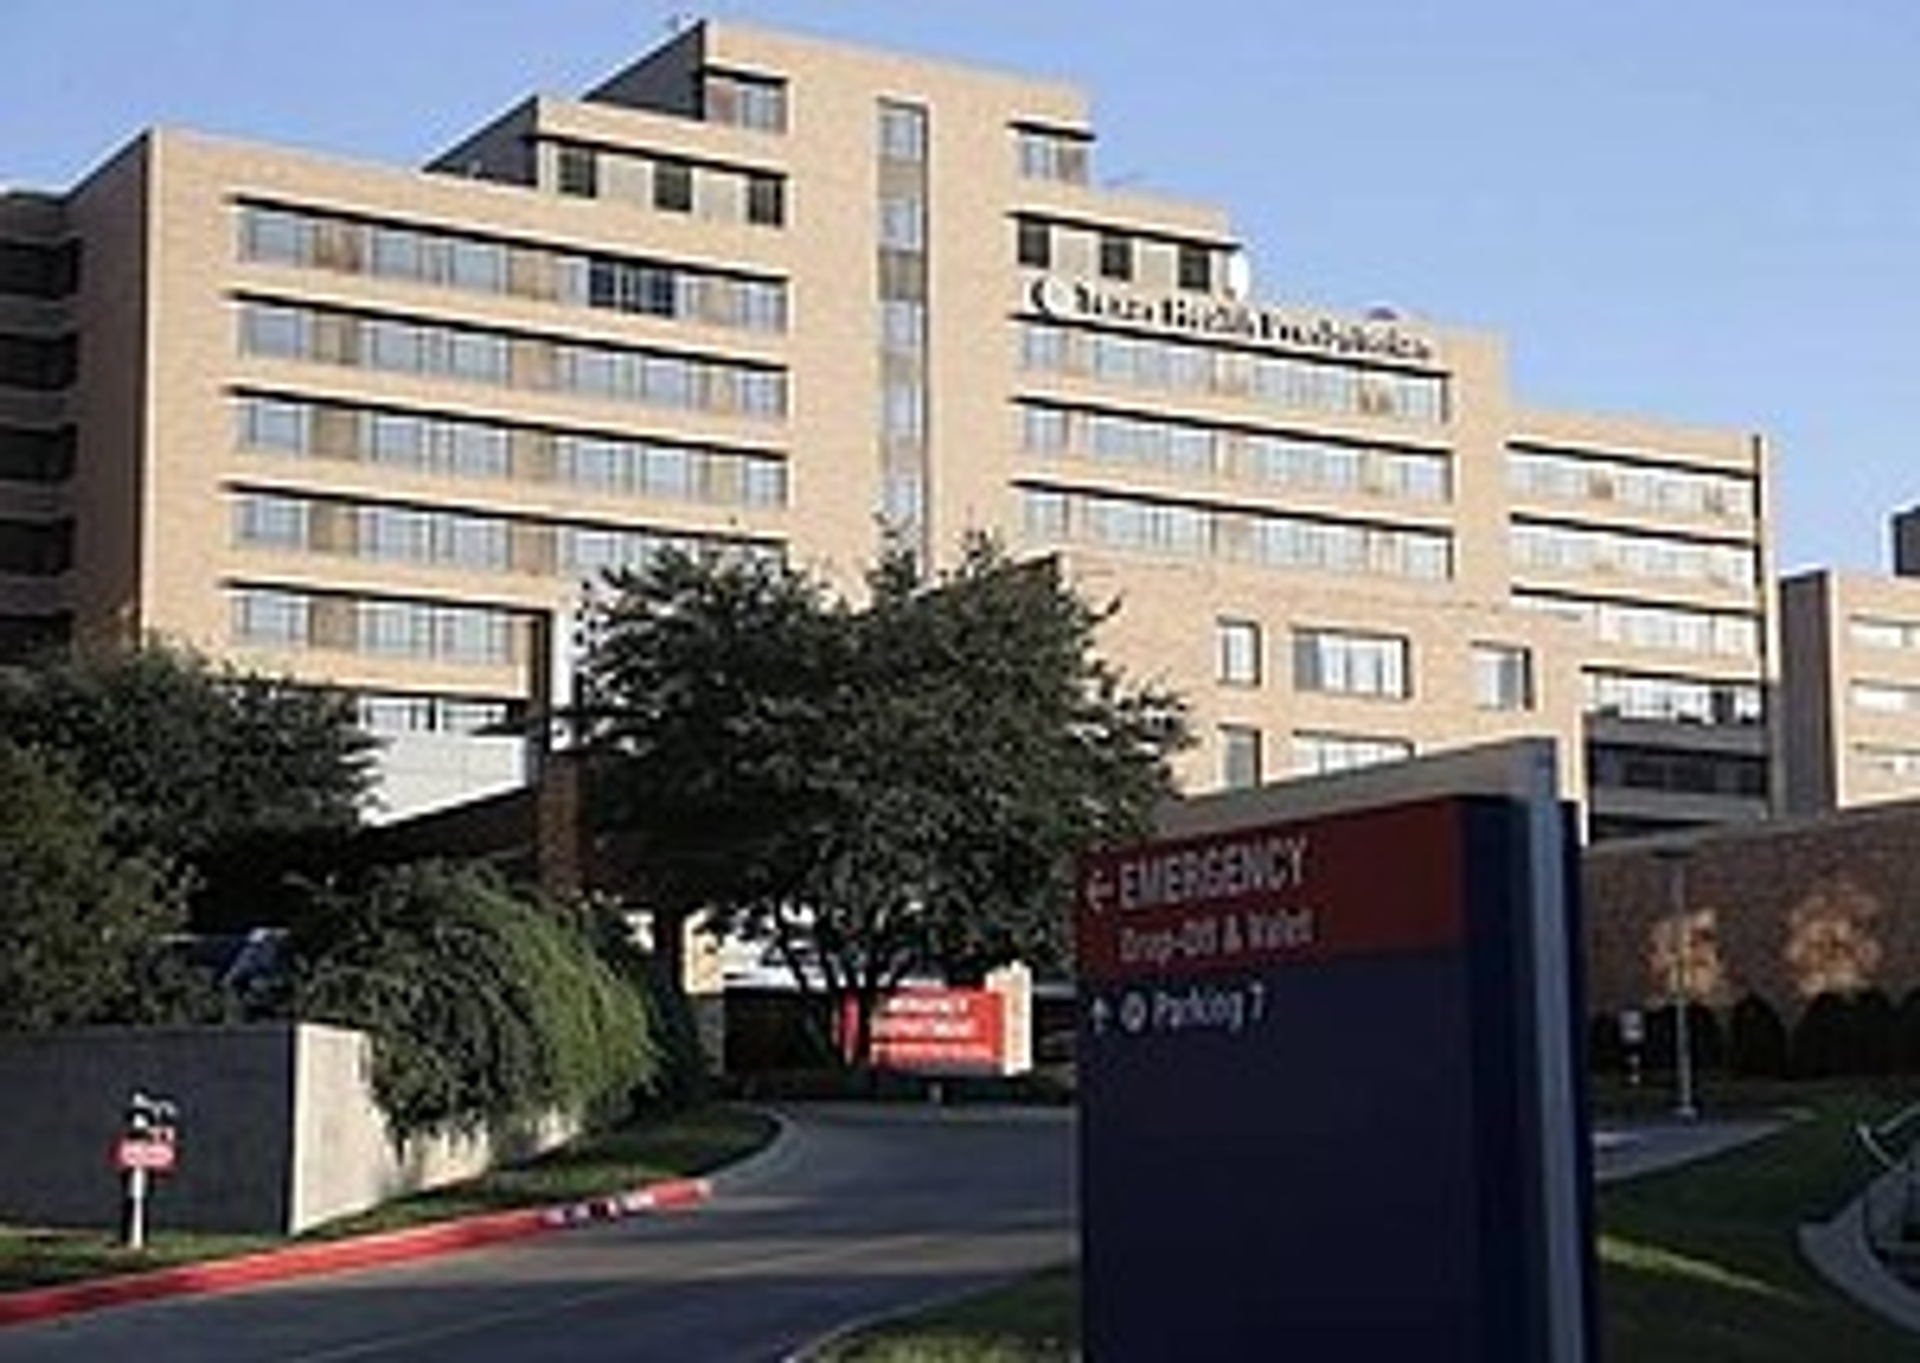 RTEmagicC_TexasHospital.jpg